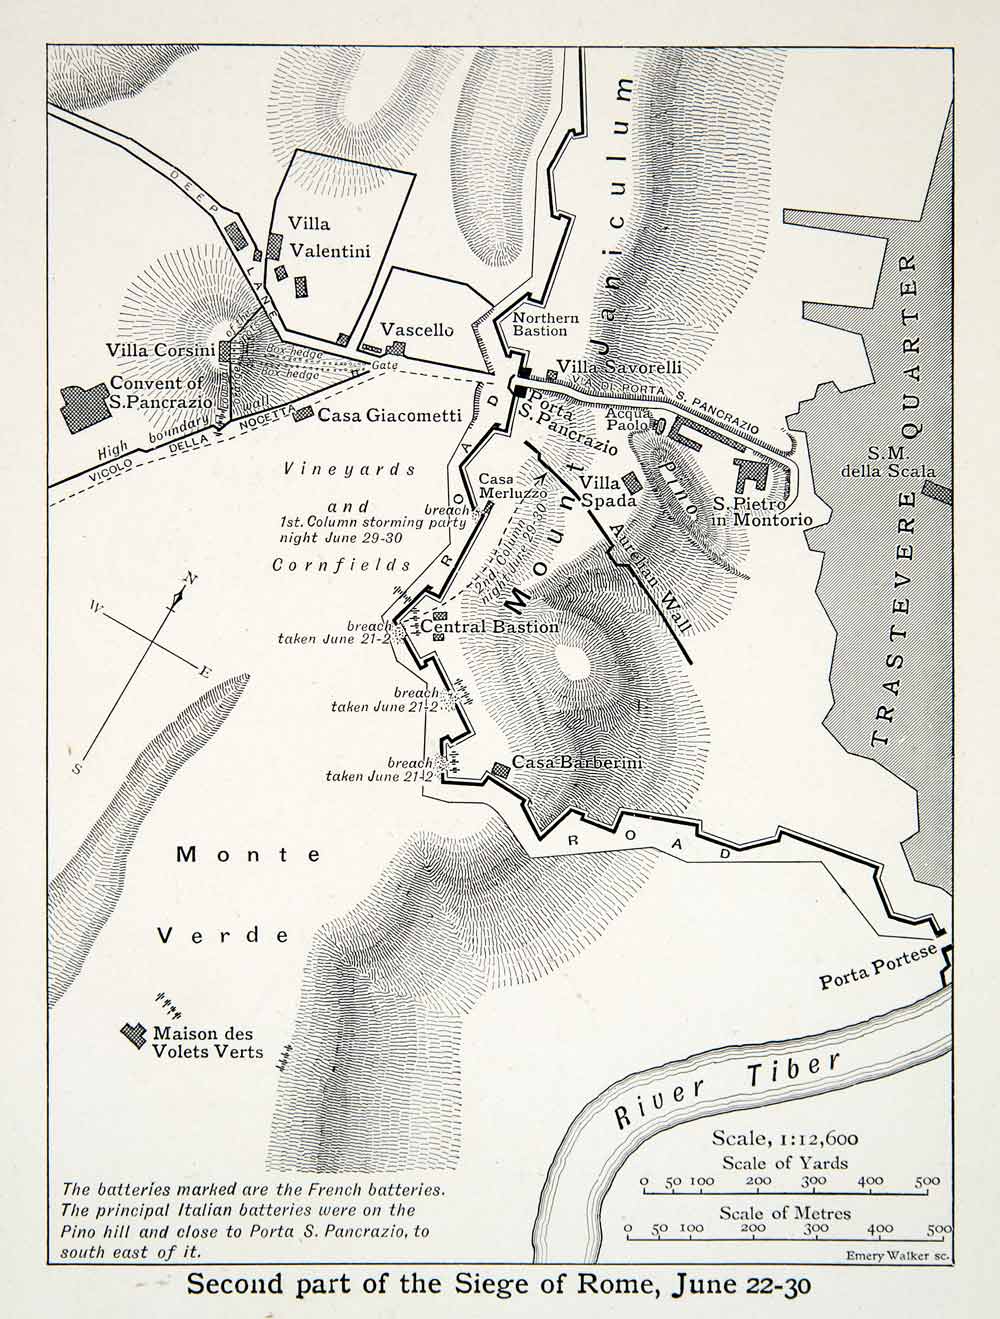 printable map of civil war battles